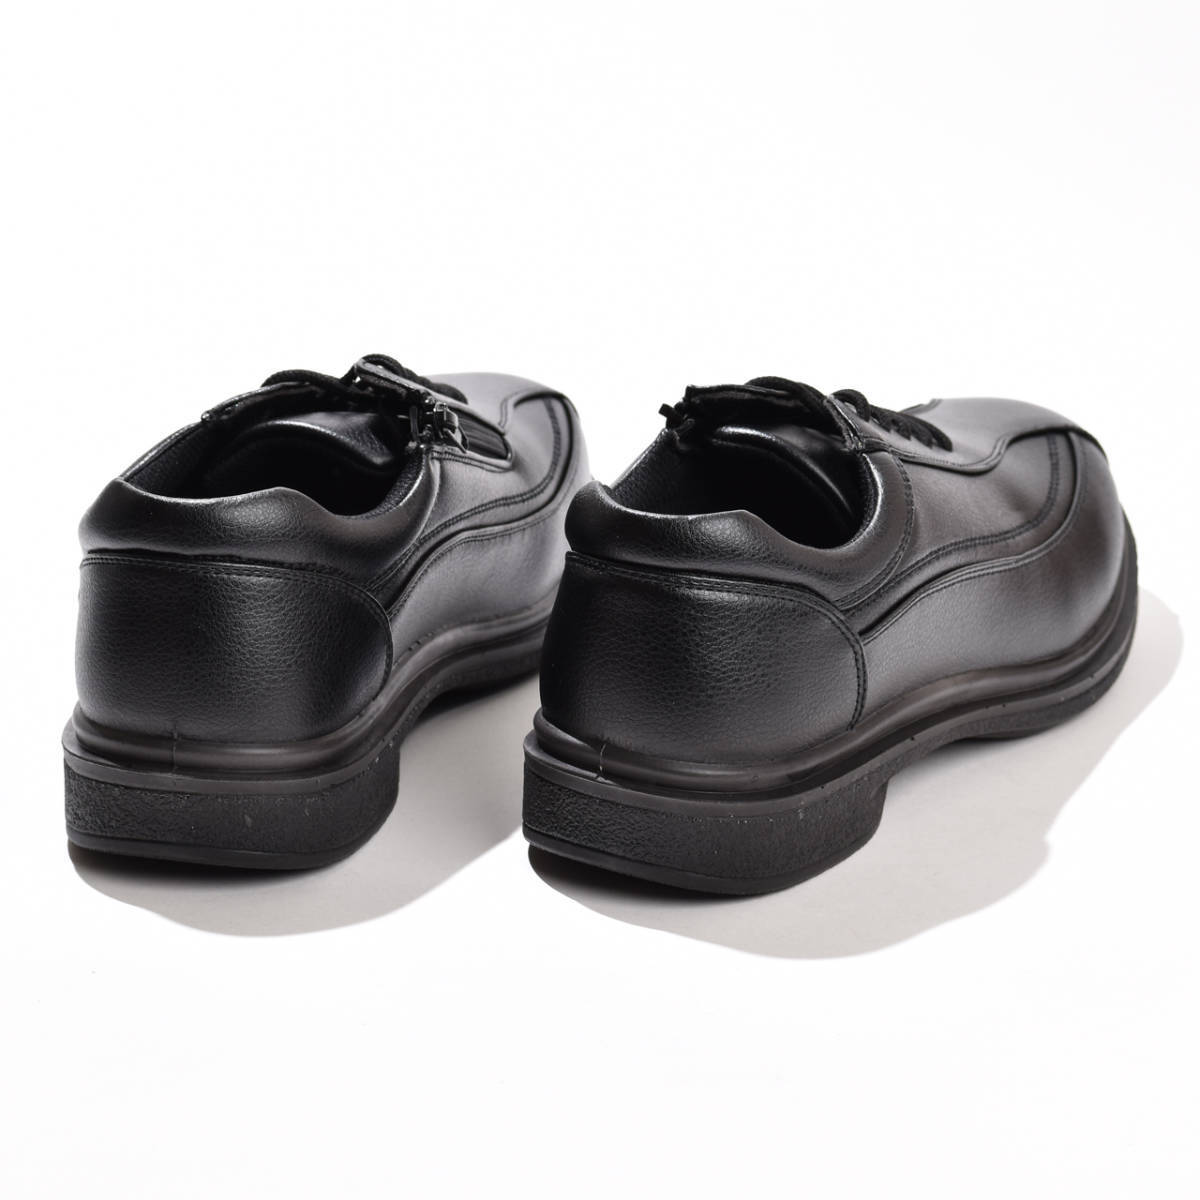 ウォーキングシューズ 25.0cm メンズ 靴 シューズ ブラック 幅広 3E